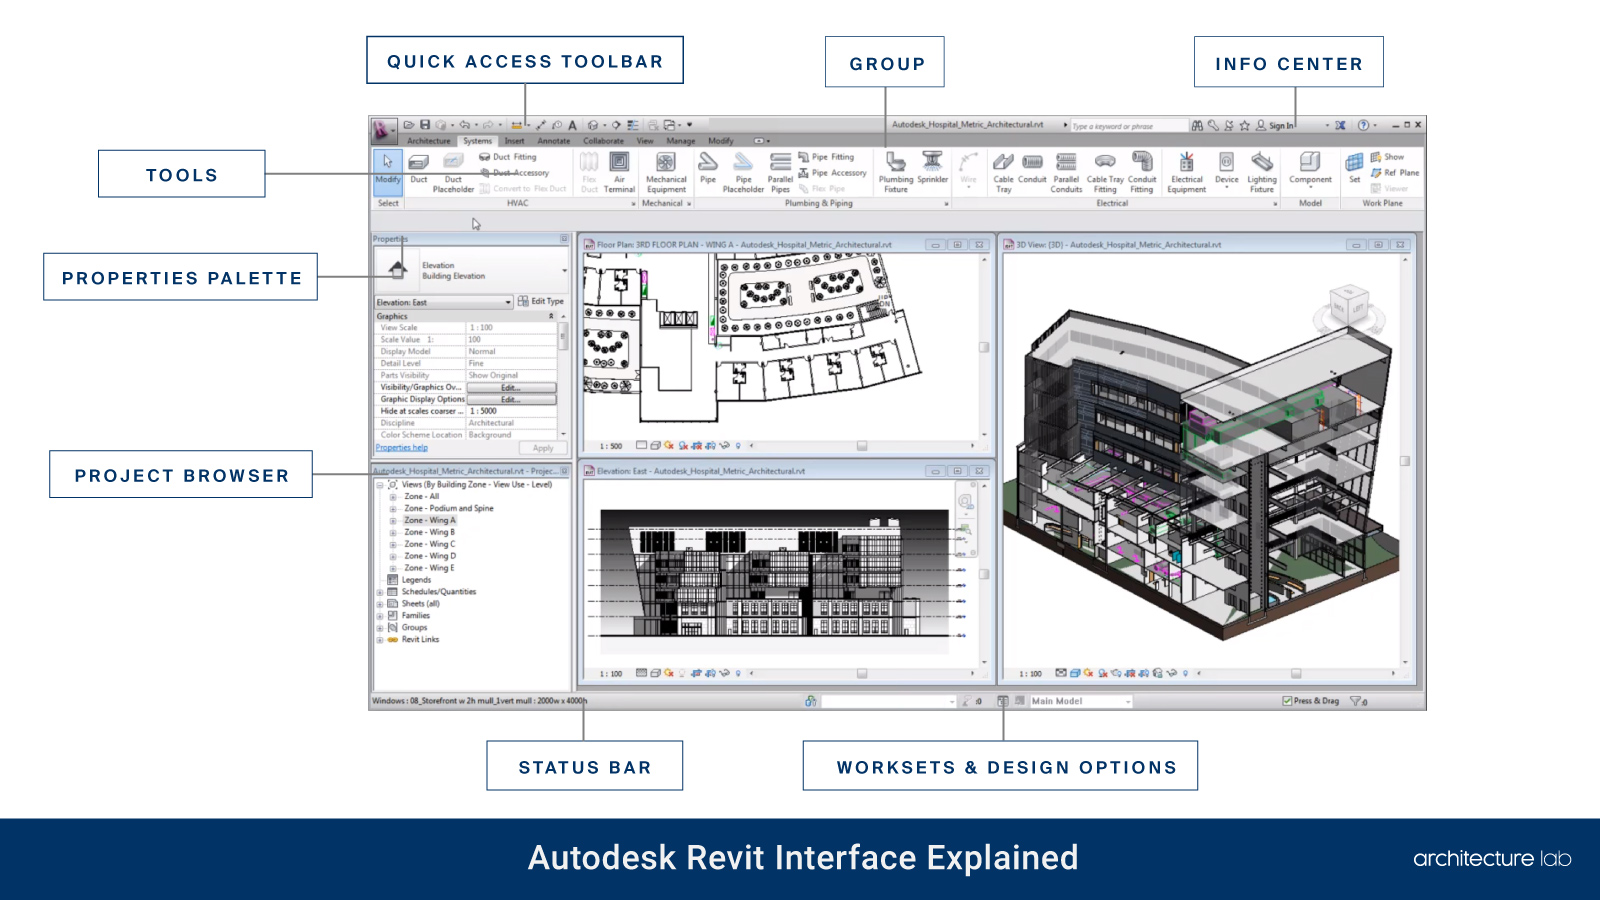 Autodesk revit: should you buy it? The architect verdict!